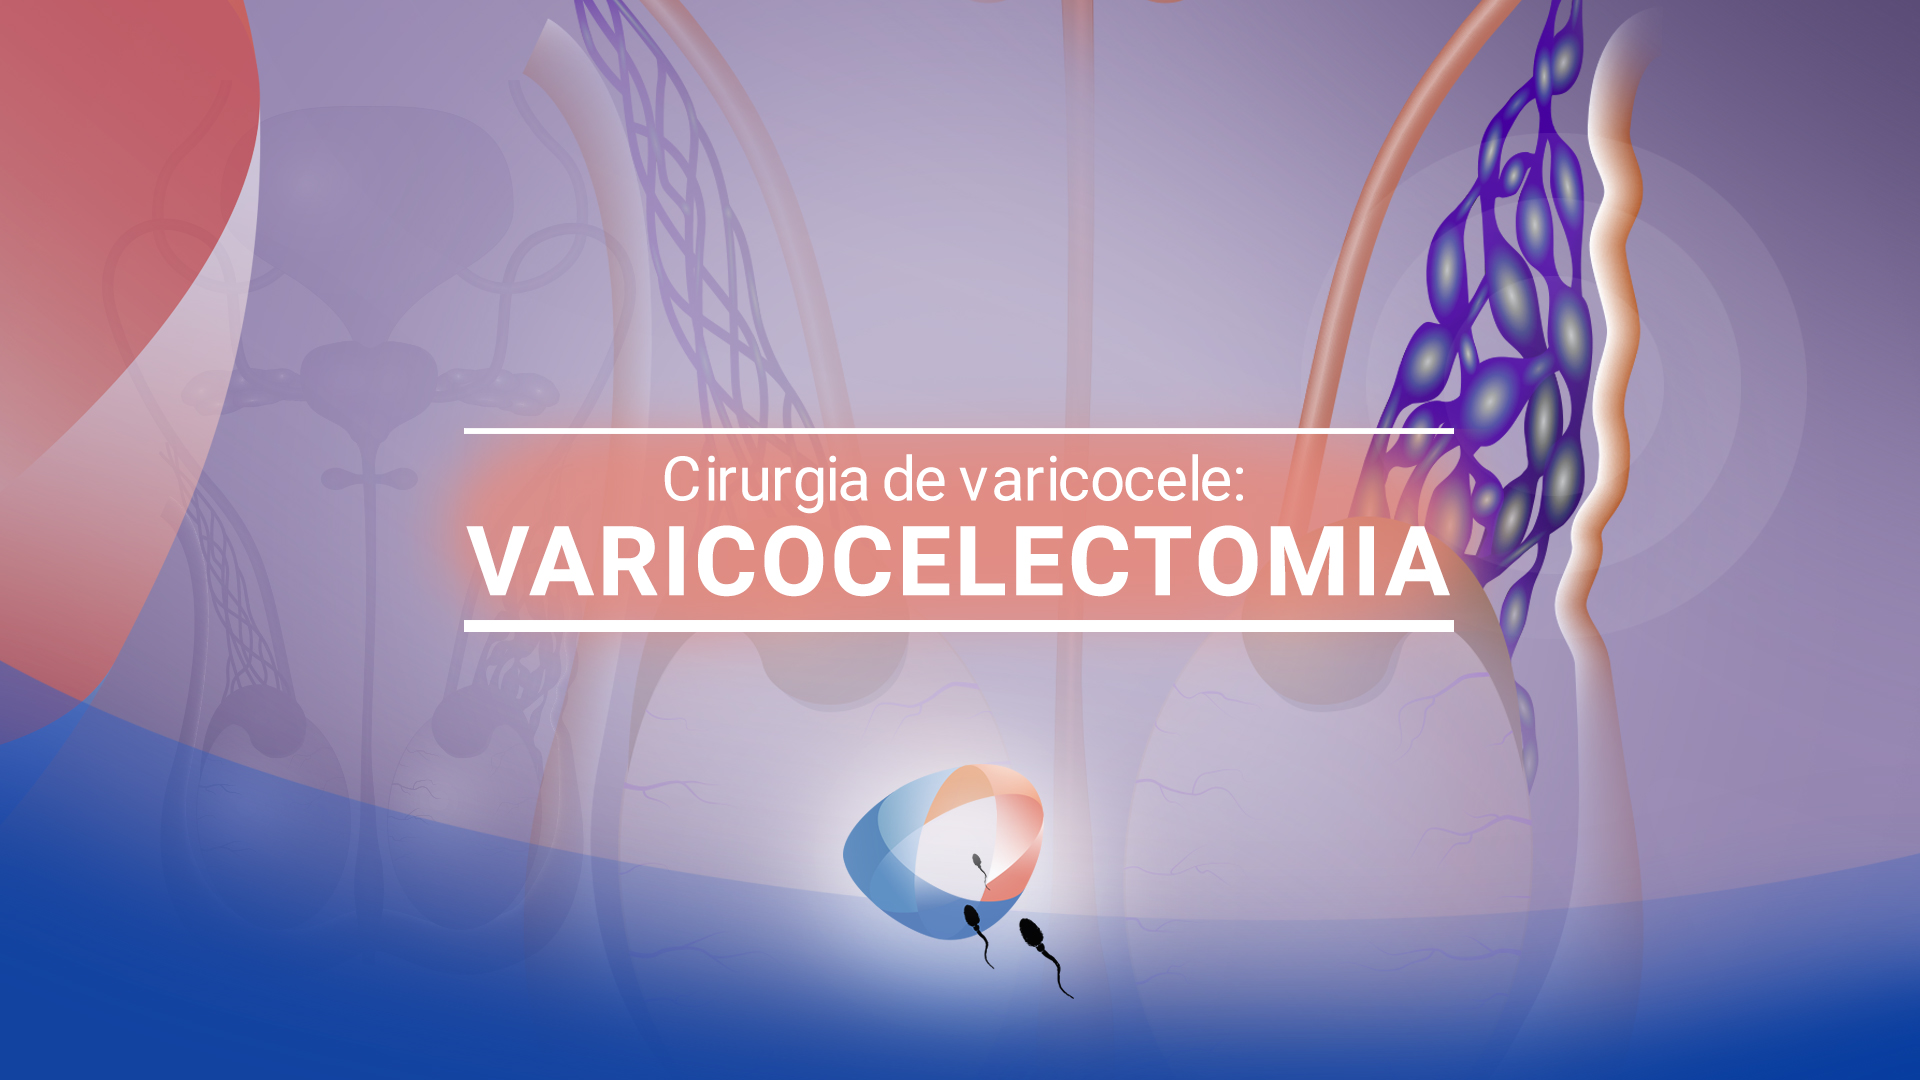 Cirurgia de varicocele: varicocelectomia